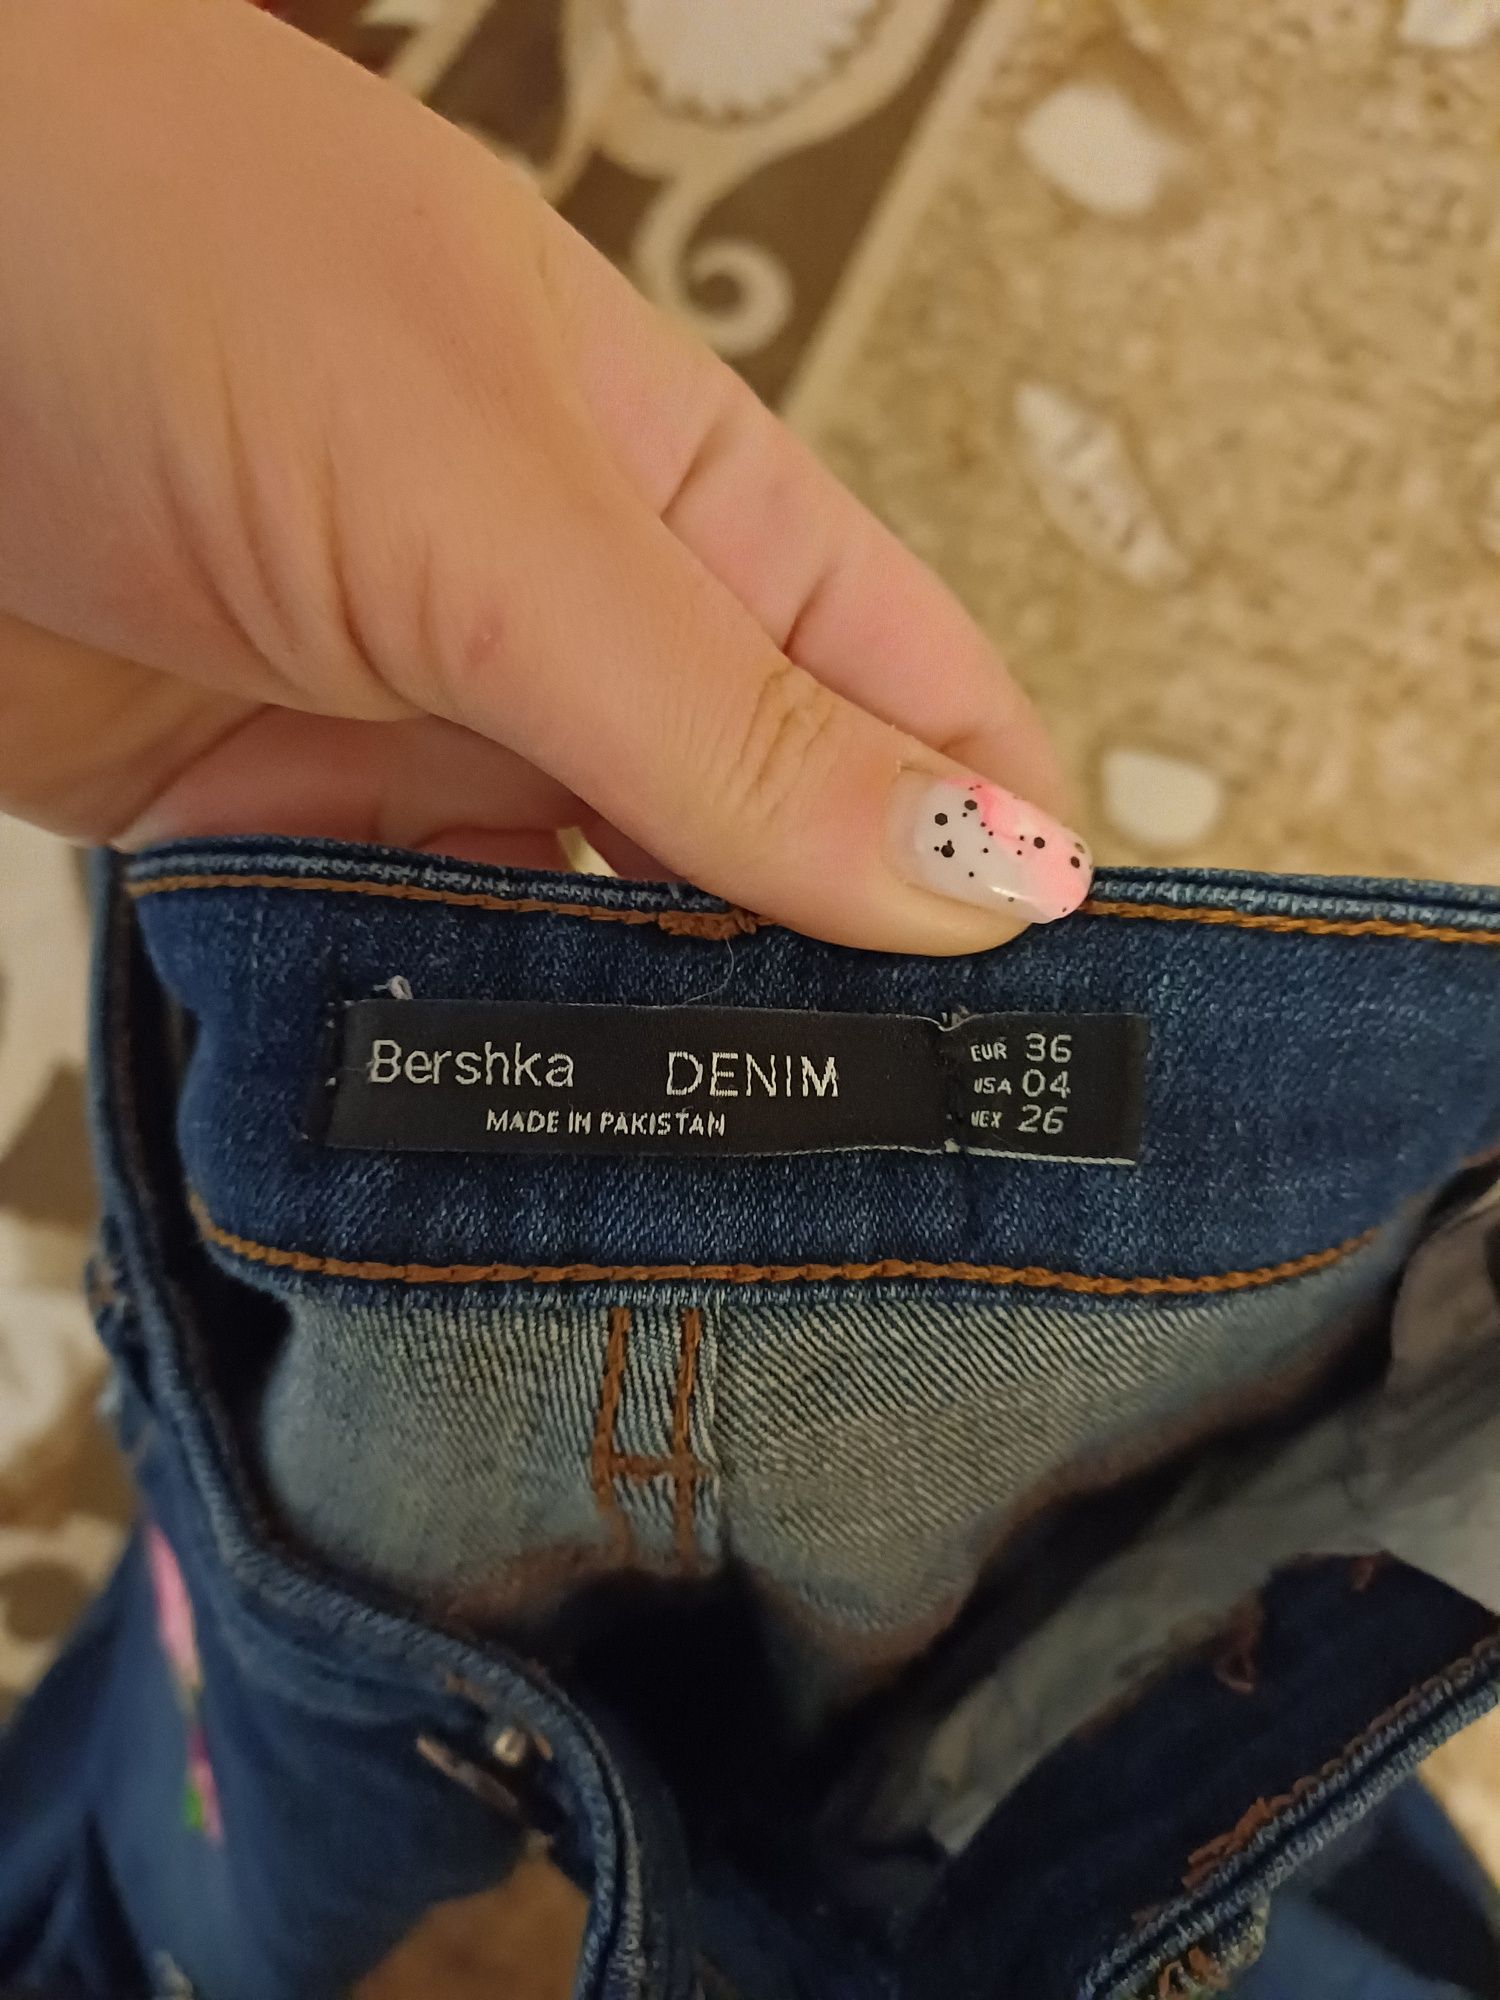 Продам джинсы в идеальном состоянии